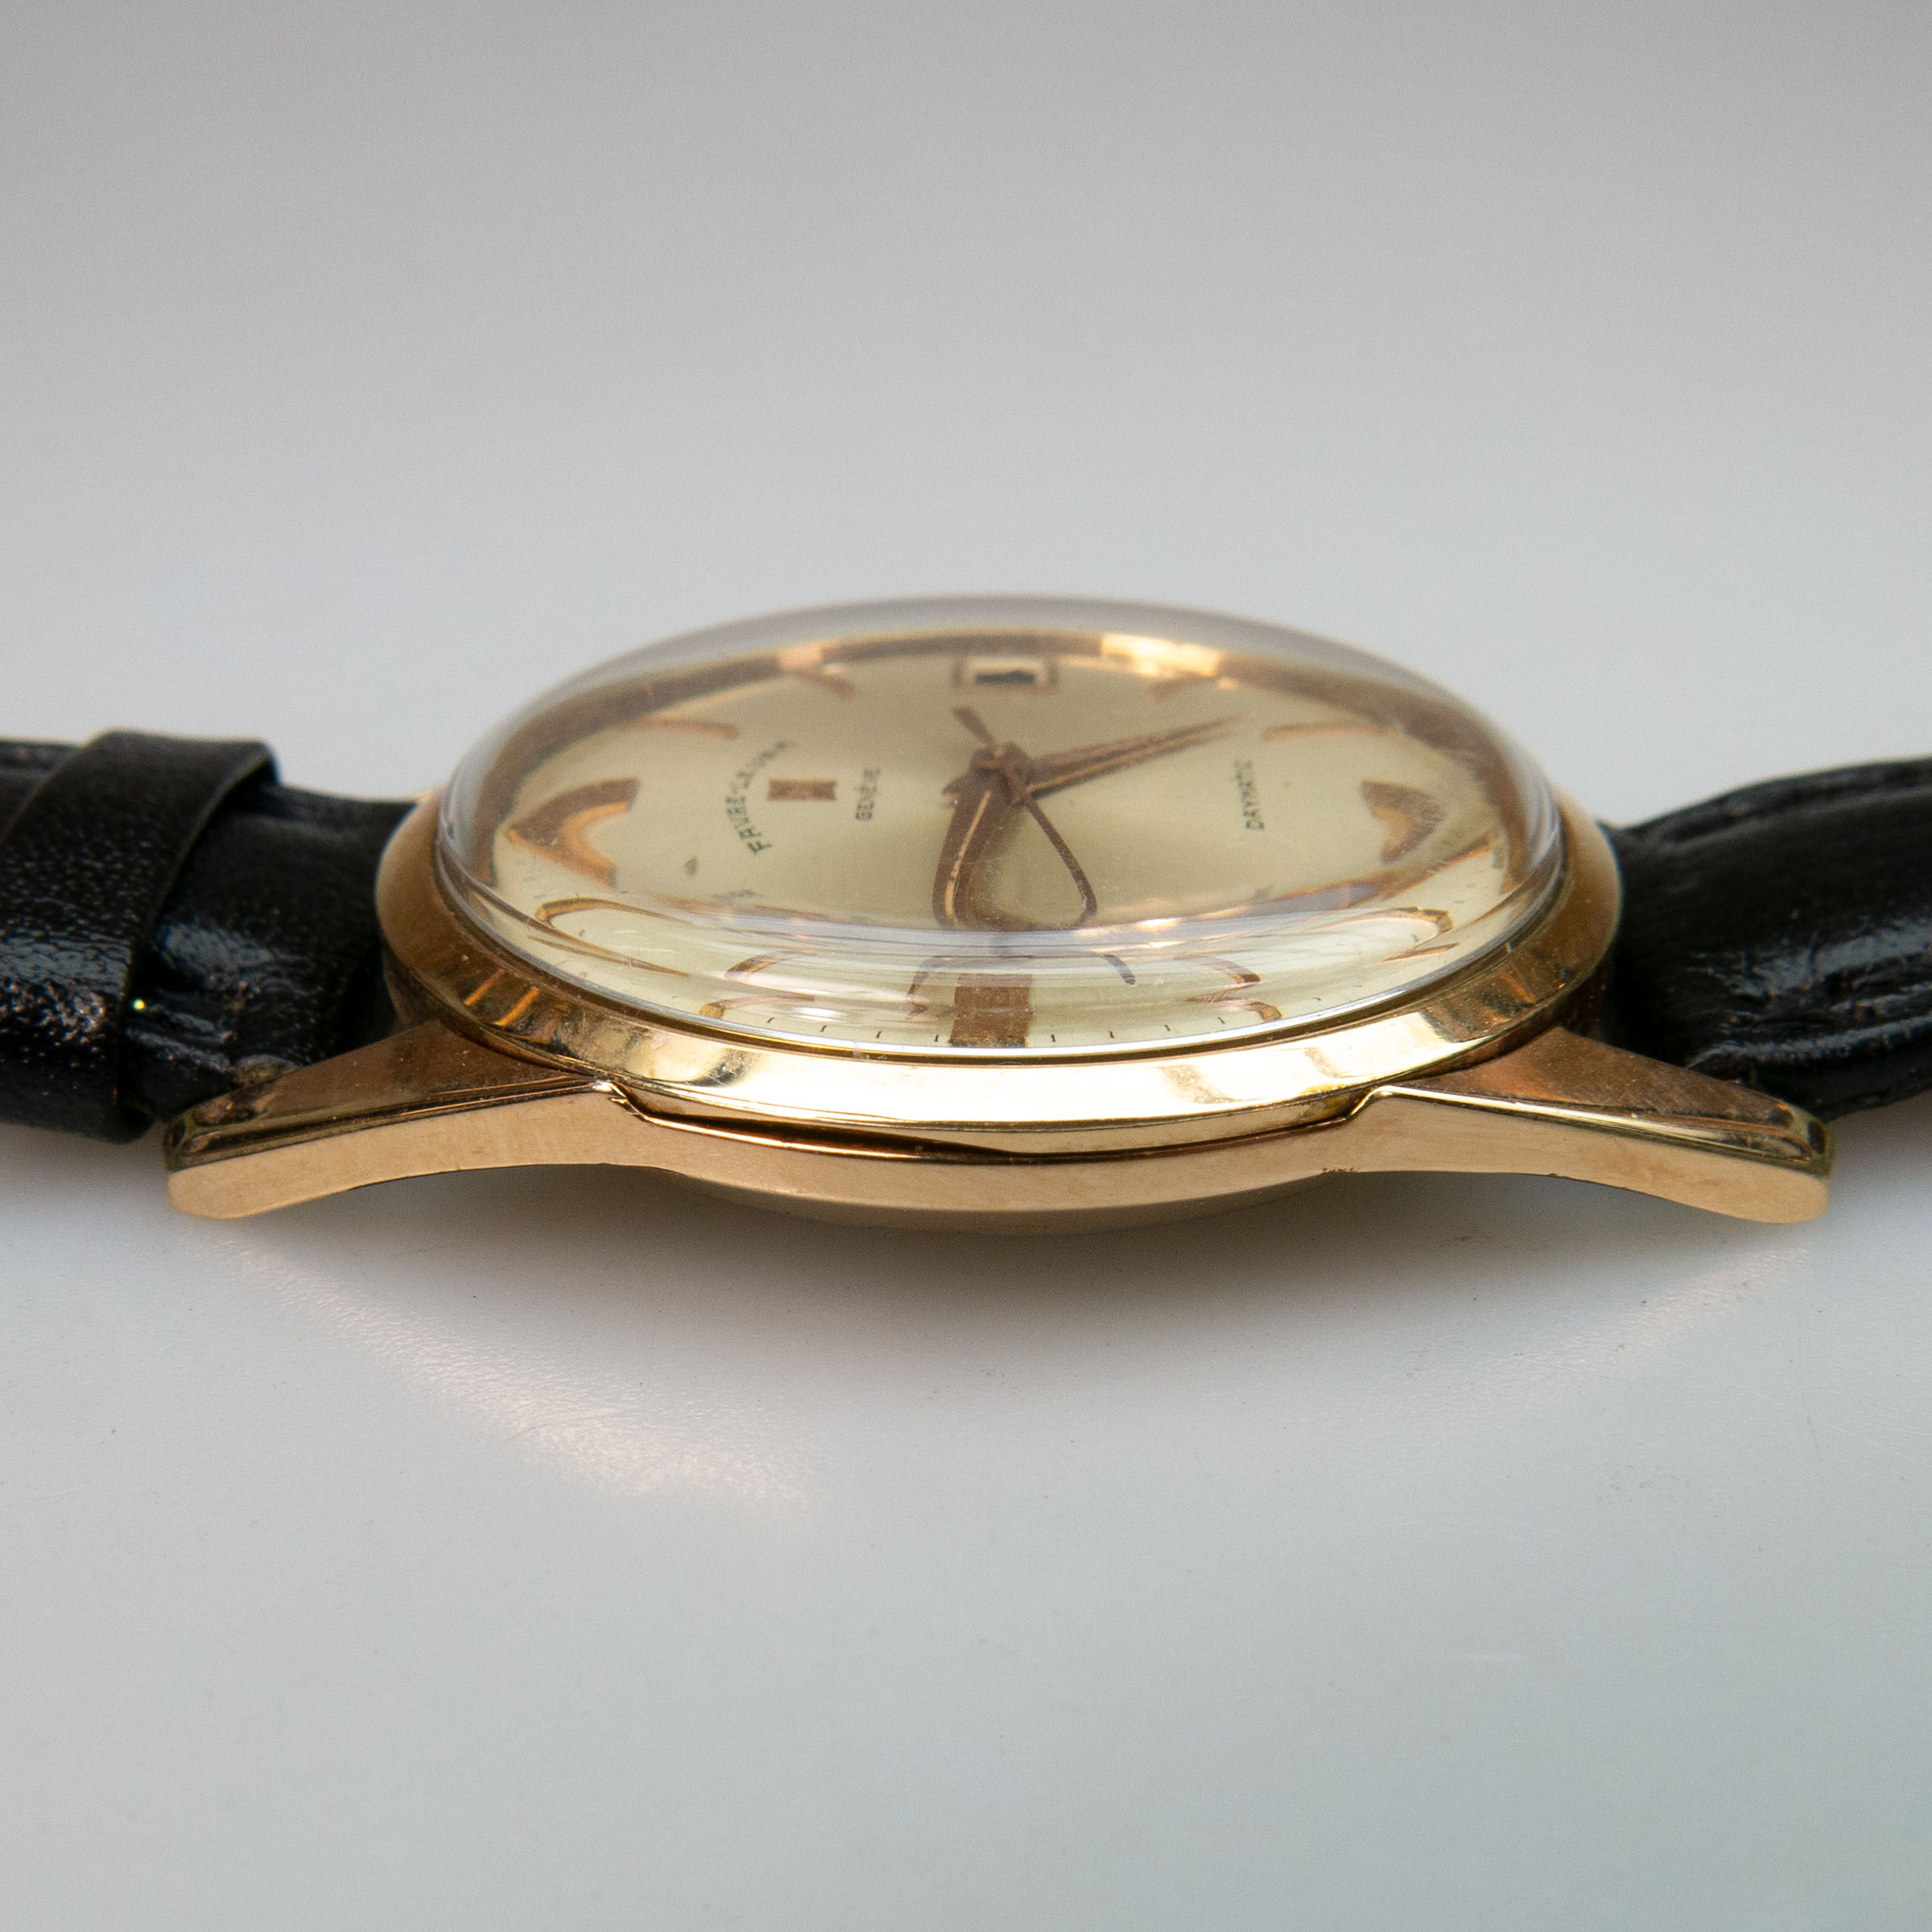 Favre-Leuba 'Daymatic' Wristwatch With Date